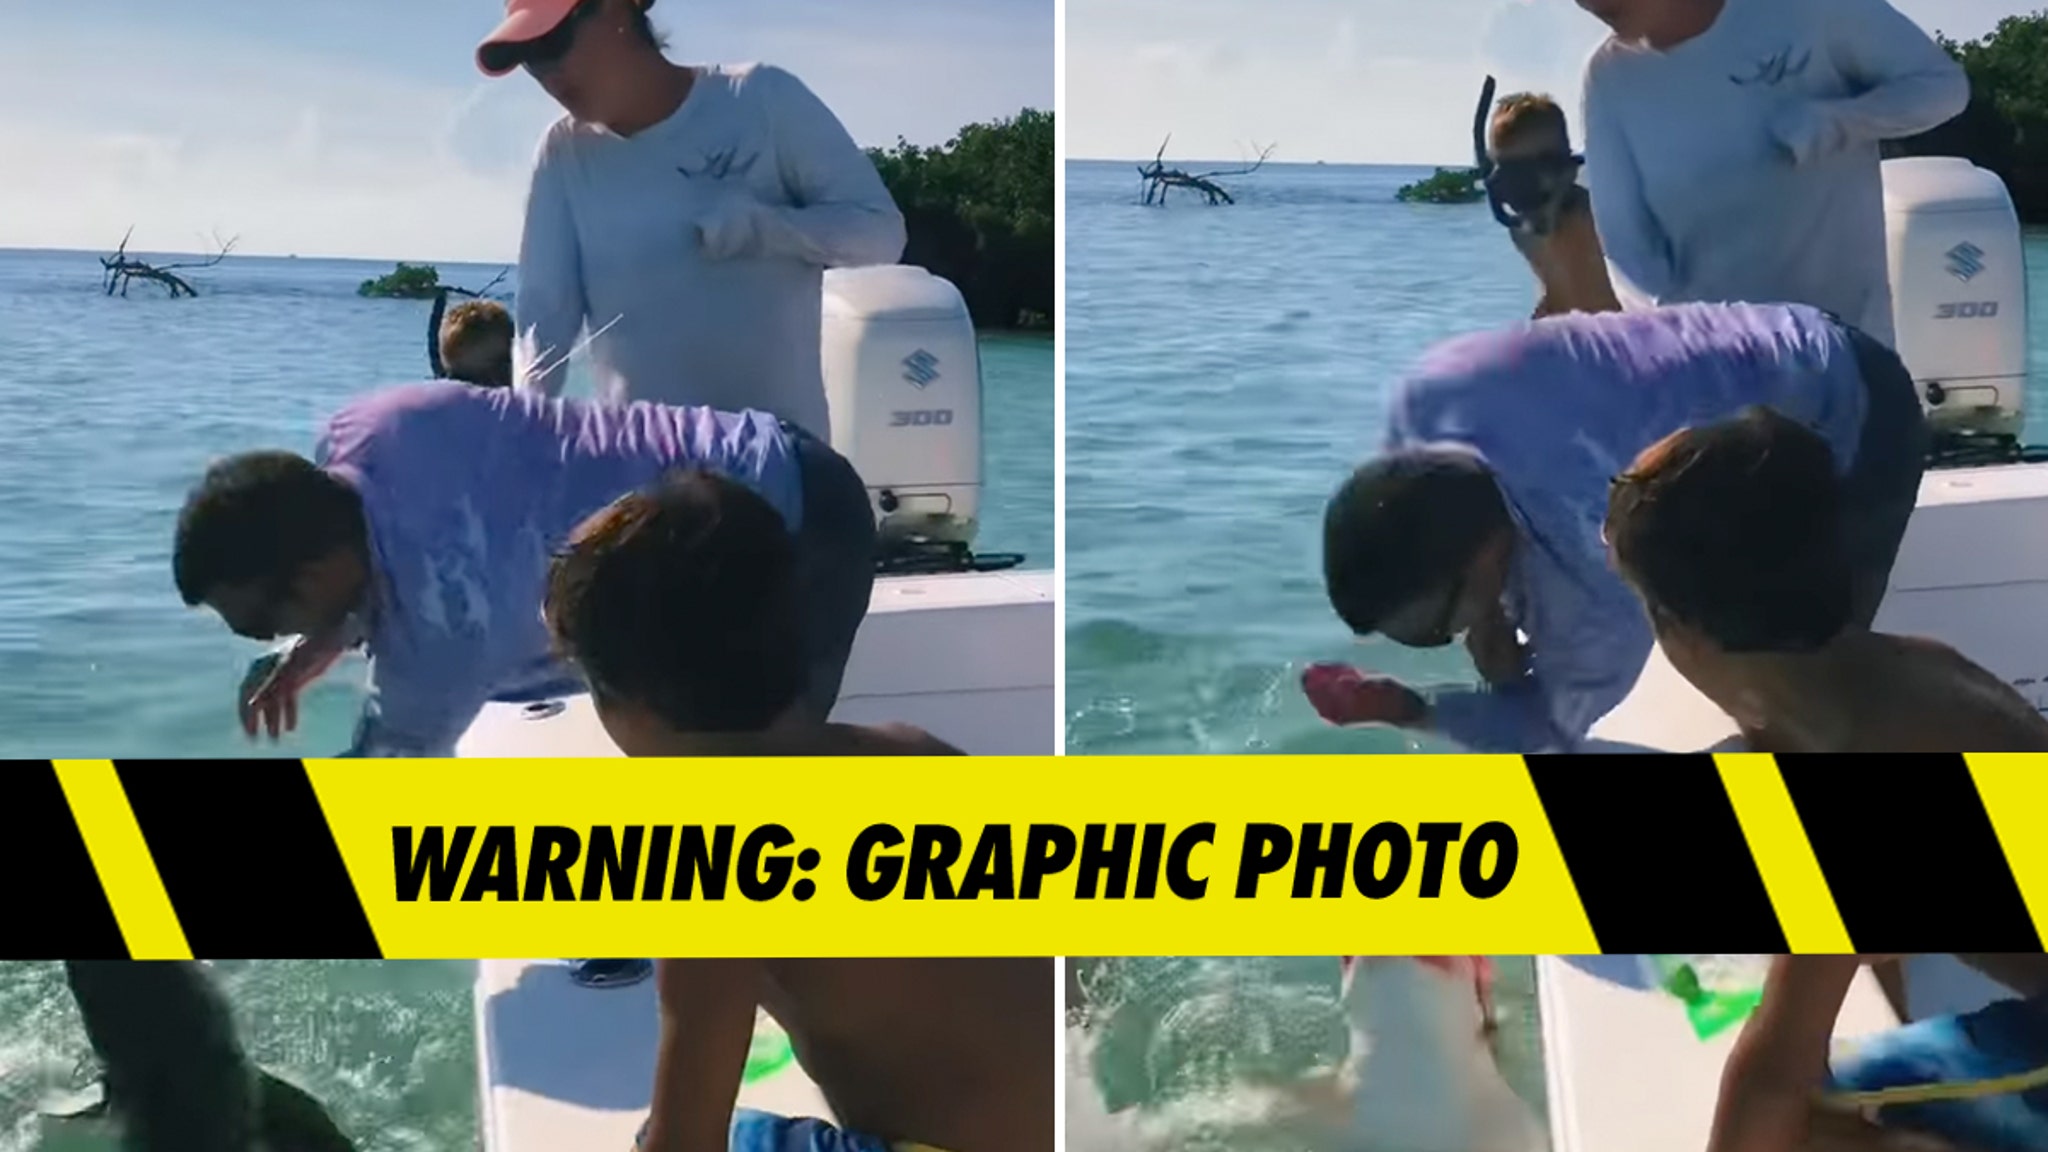 Hai beißt Fischer in erschreckendem Video in den Finger